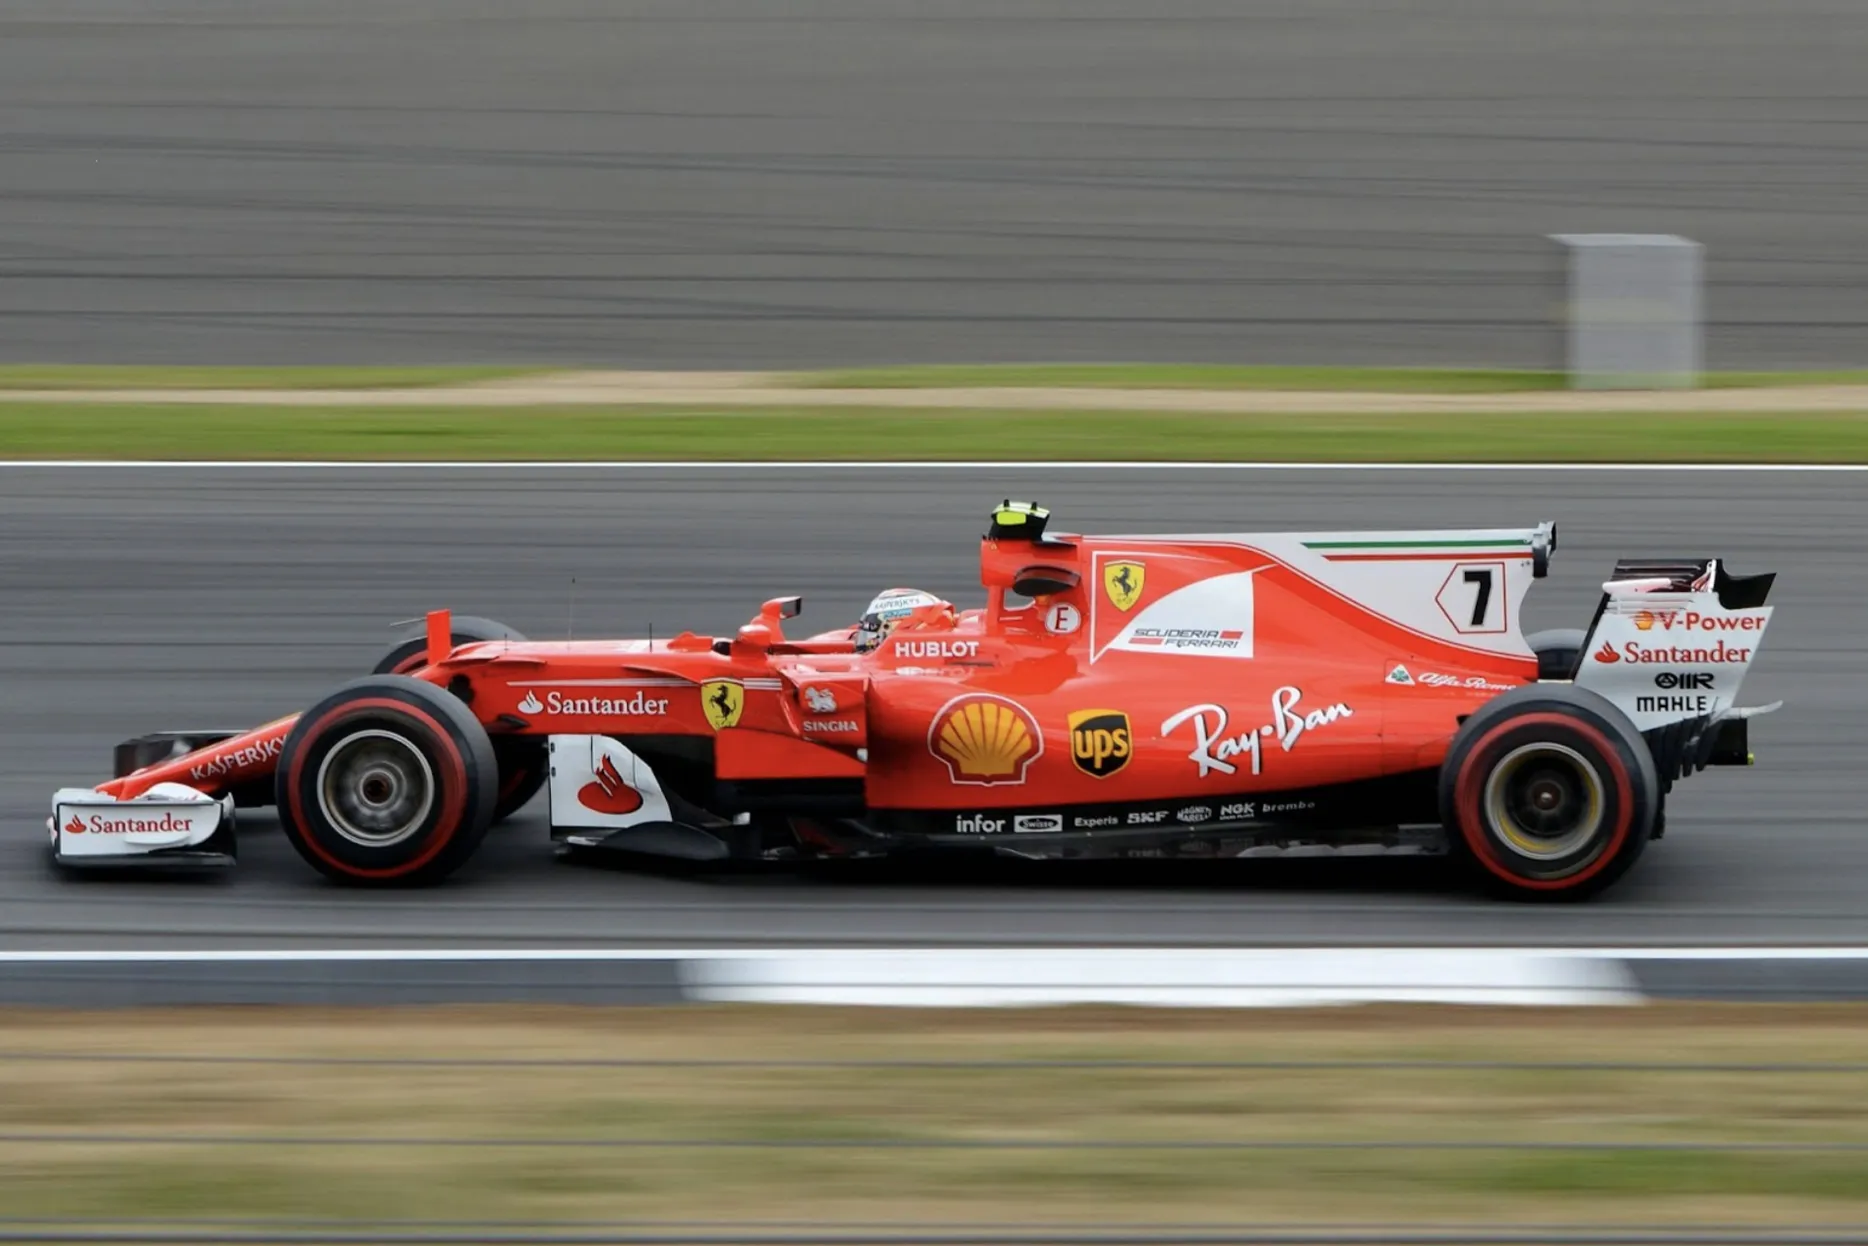 Kimi Raikonnen speeding down a straight in his Ferrari F1 car